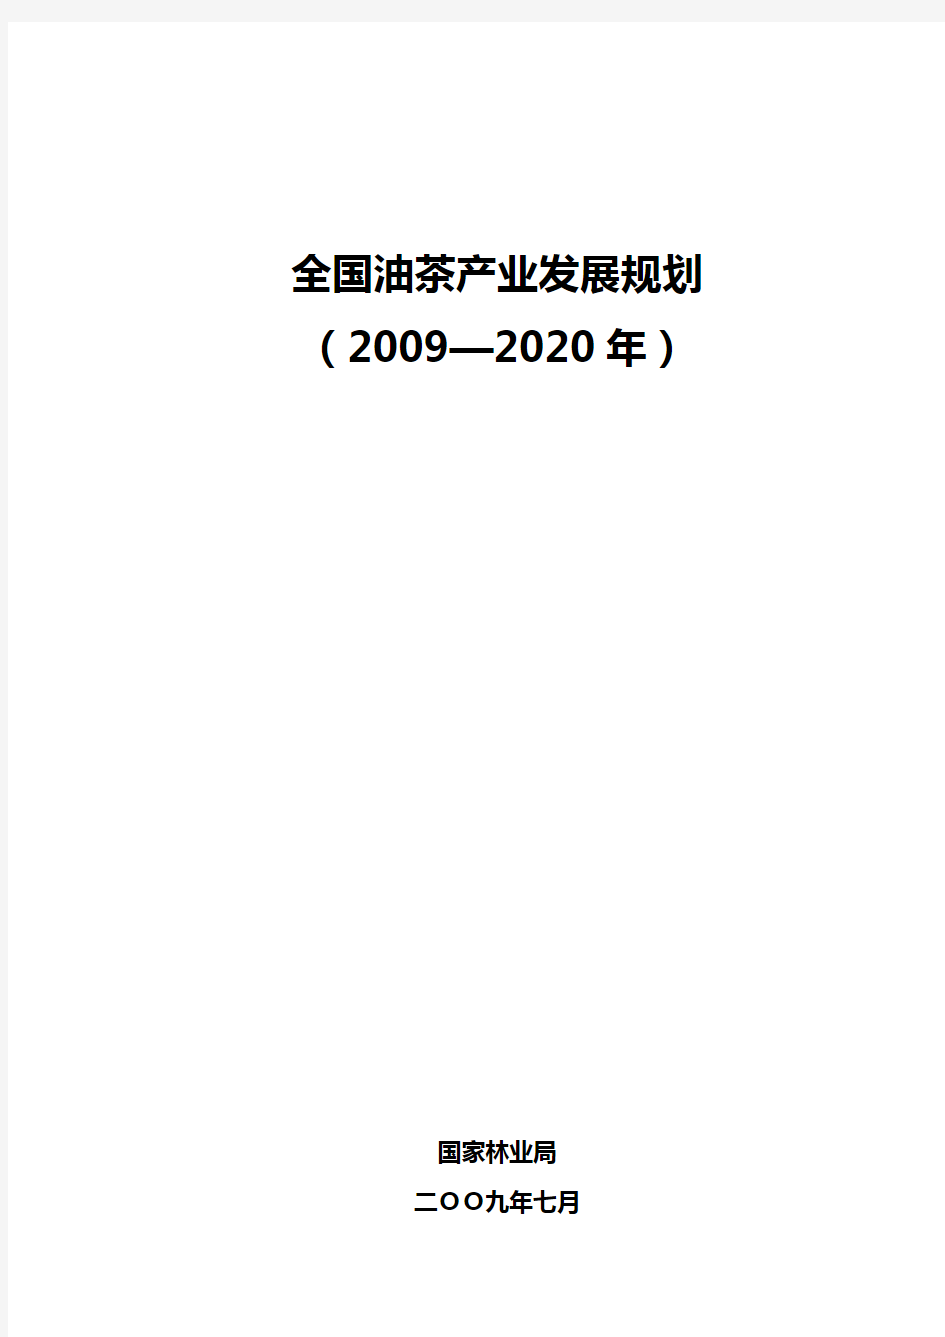 全国油茶产业发展规划(2009-2020年)最为完整的WORD格式版